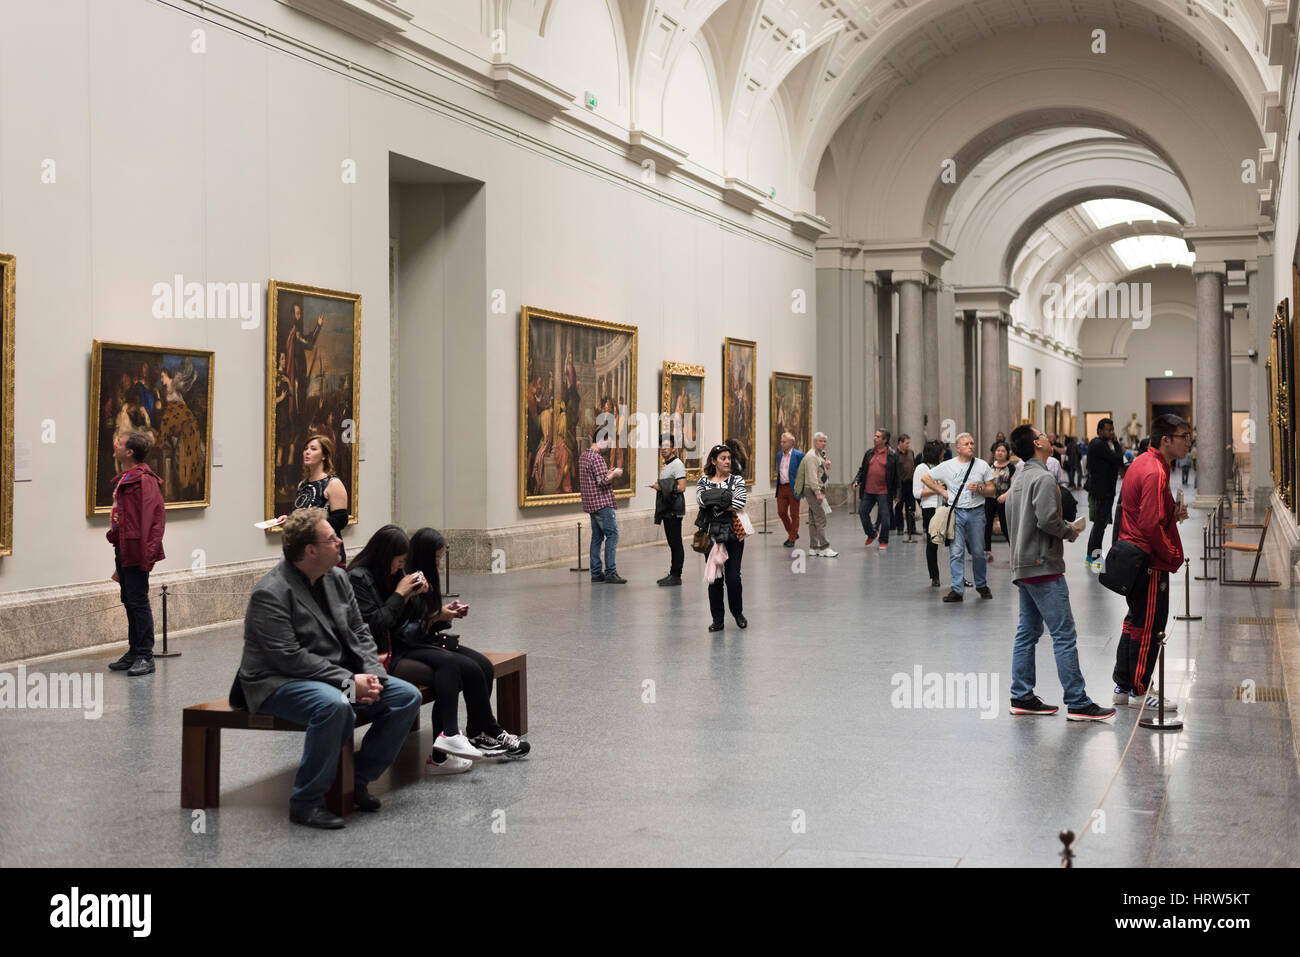 Madrid. Spain. People at the Prado Museum (Museo del Prado). Stock Photo